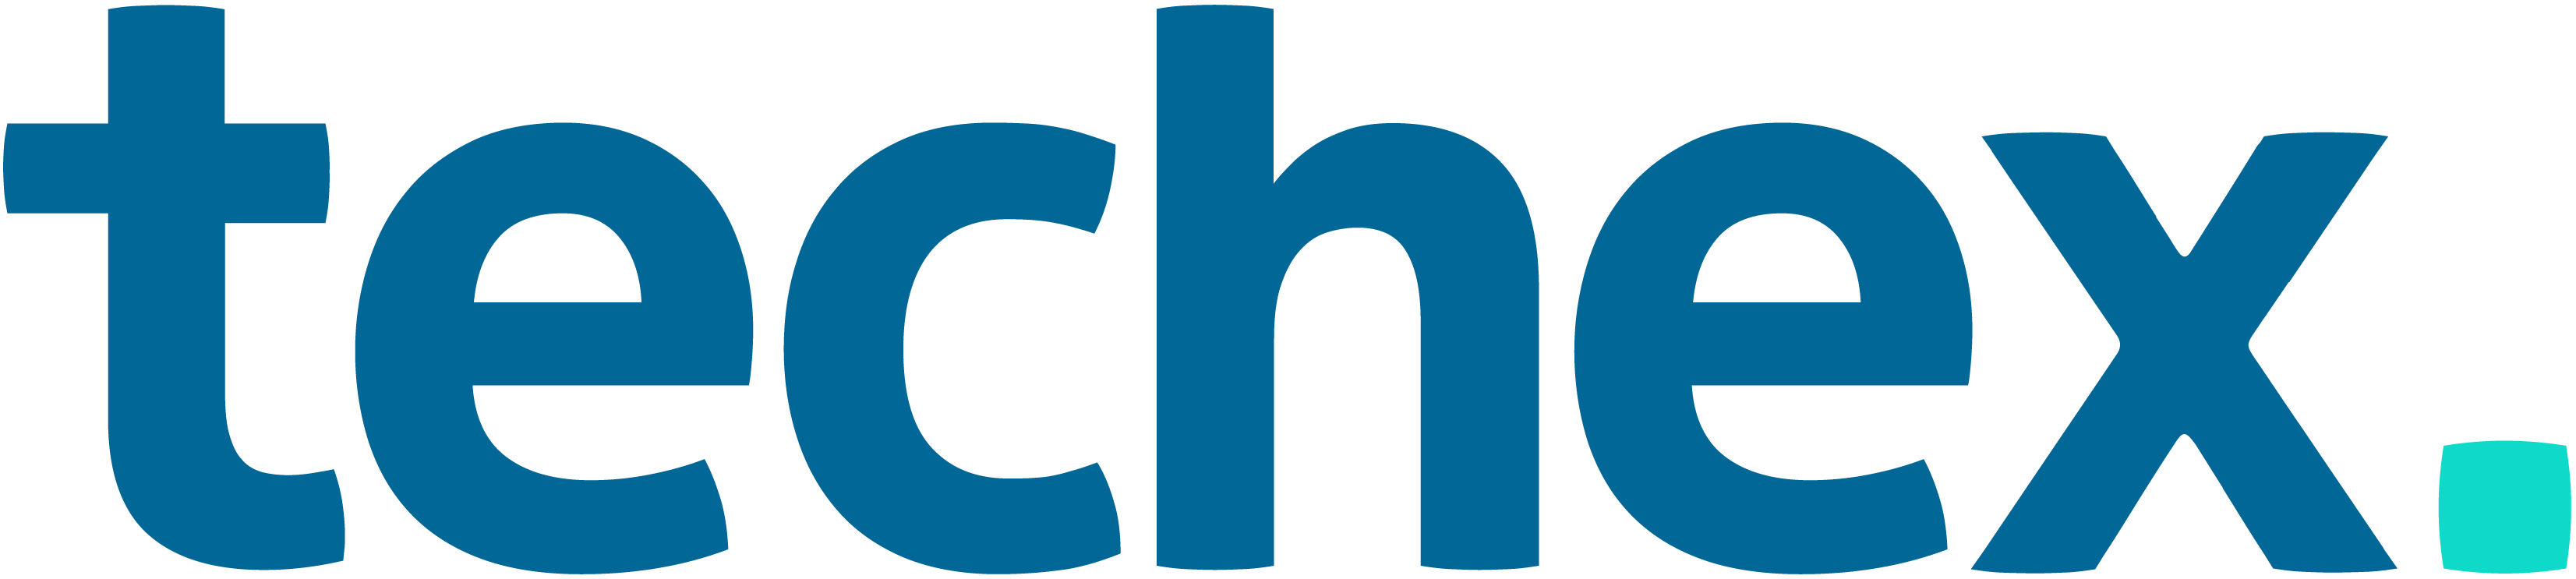 Logo from company techex.